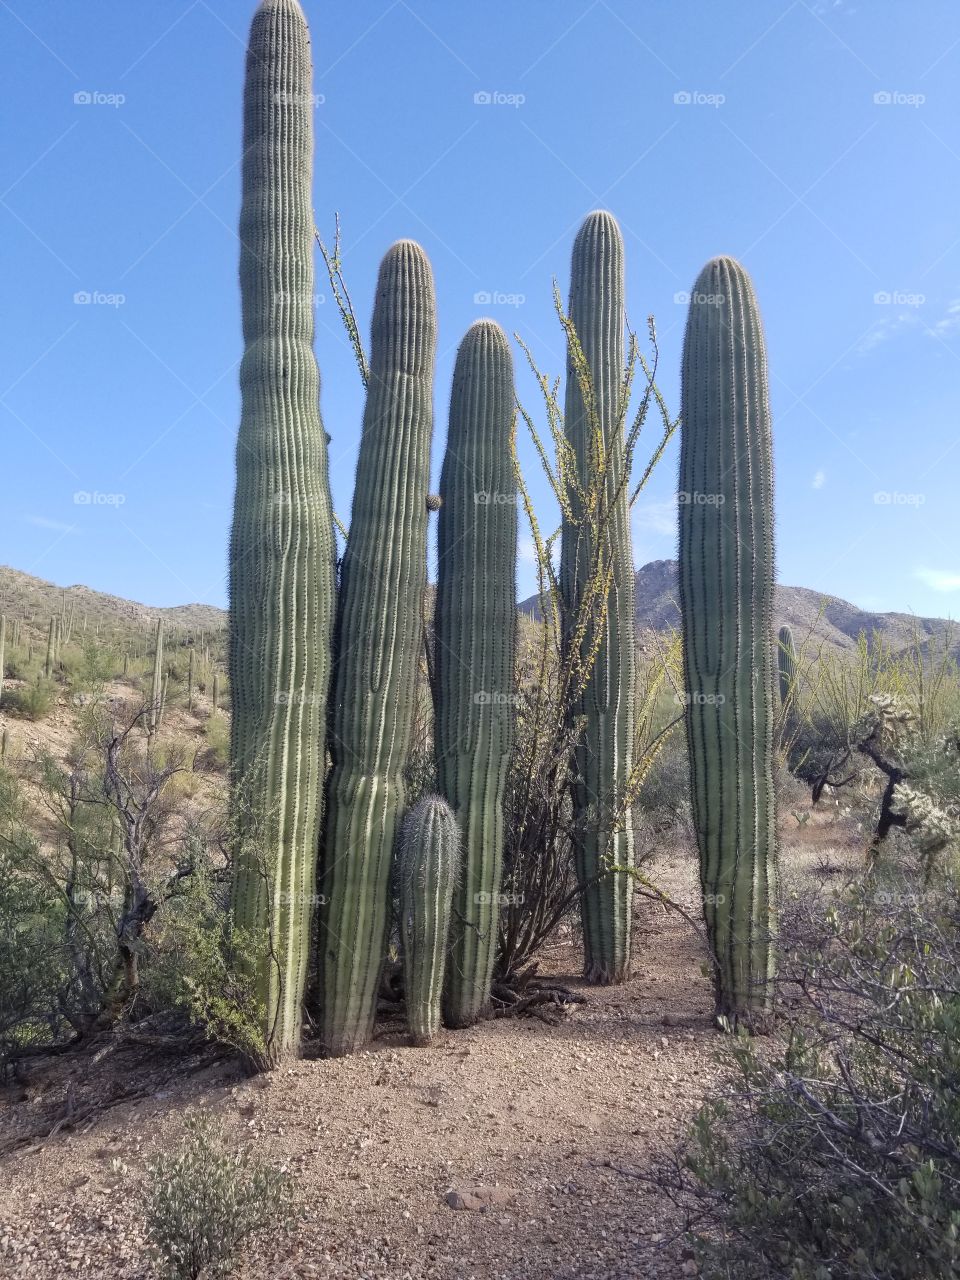 Group of Saguaro Cacti